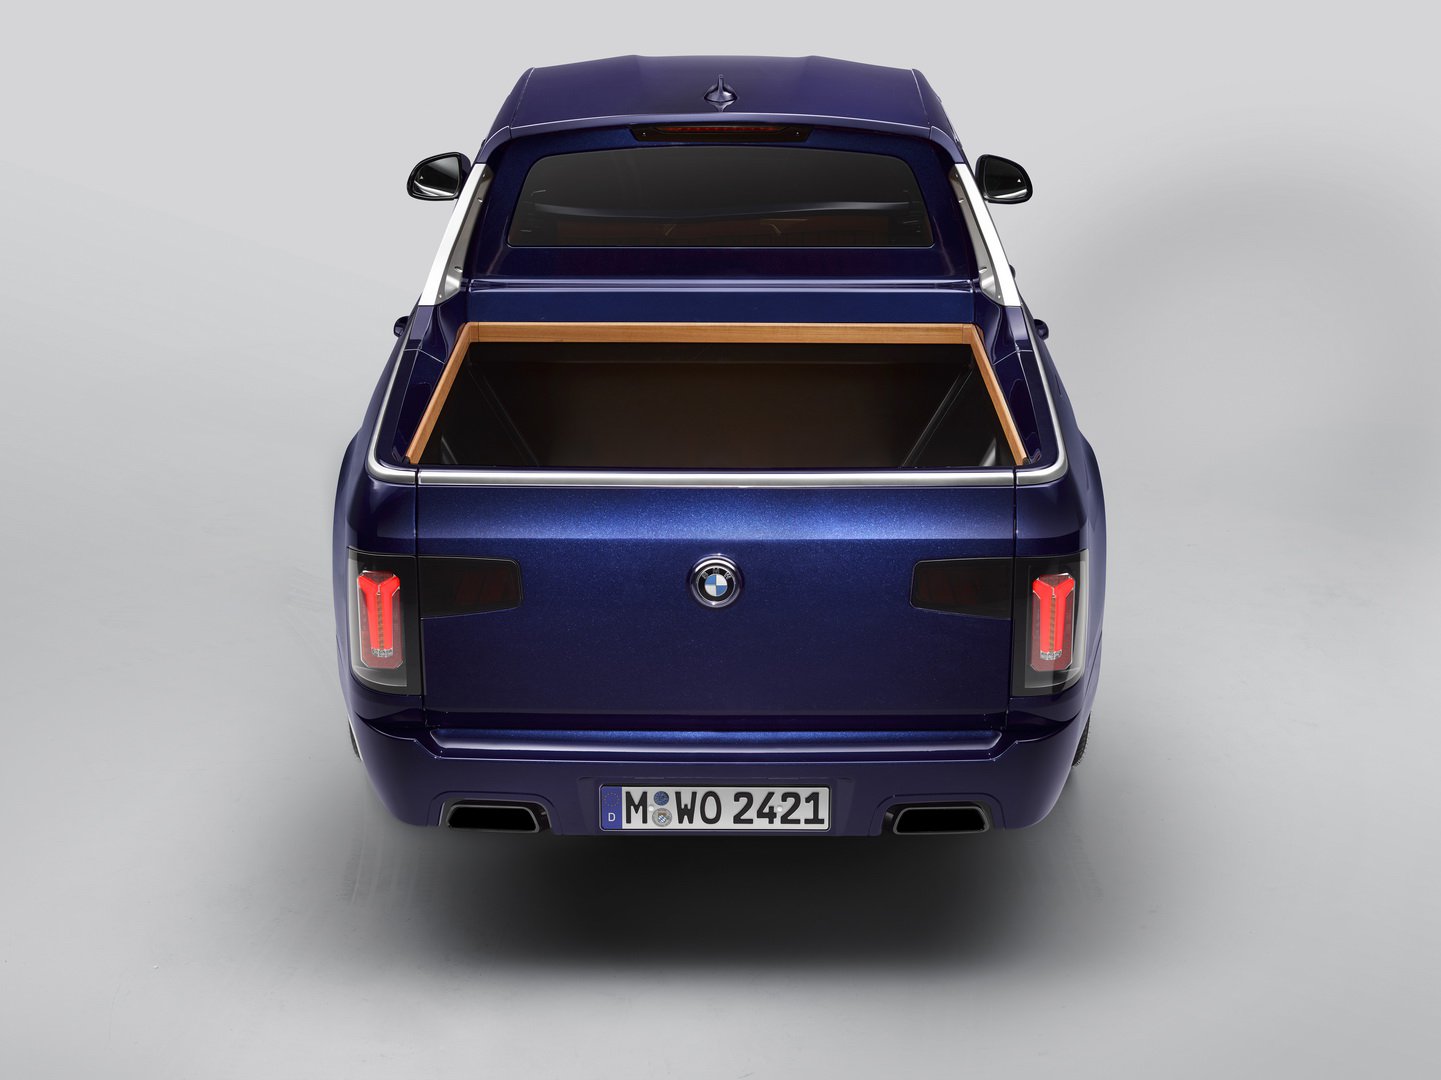 Özel bir etkinlik için tasarlanan BMW X7 pickup konsepti tanıtıldı